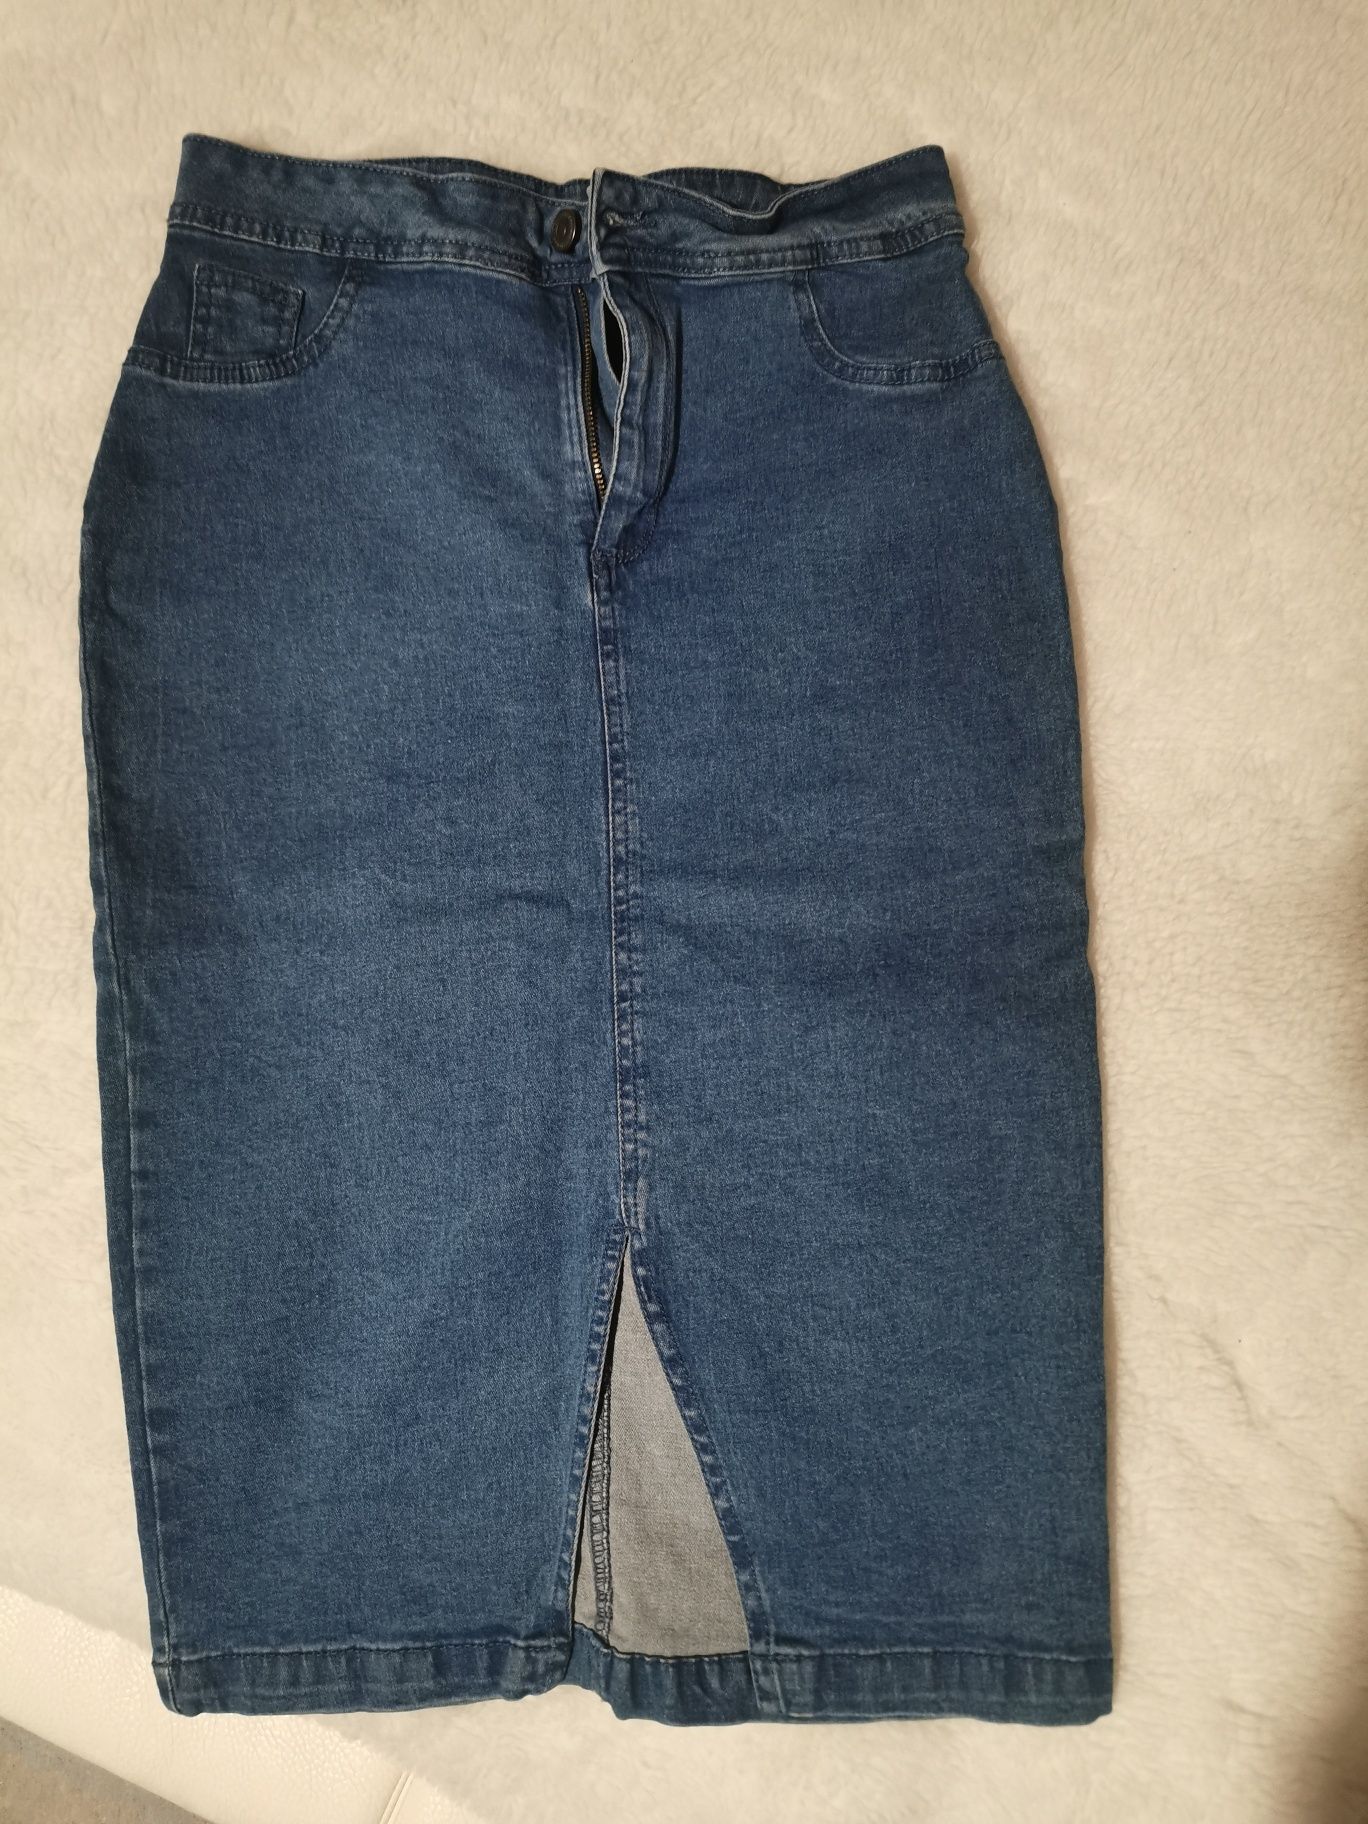 Spódnica jeansowa ołówkowa z rozcięciem. R. S